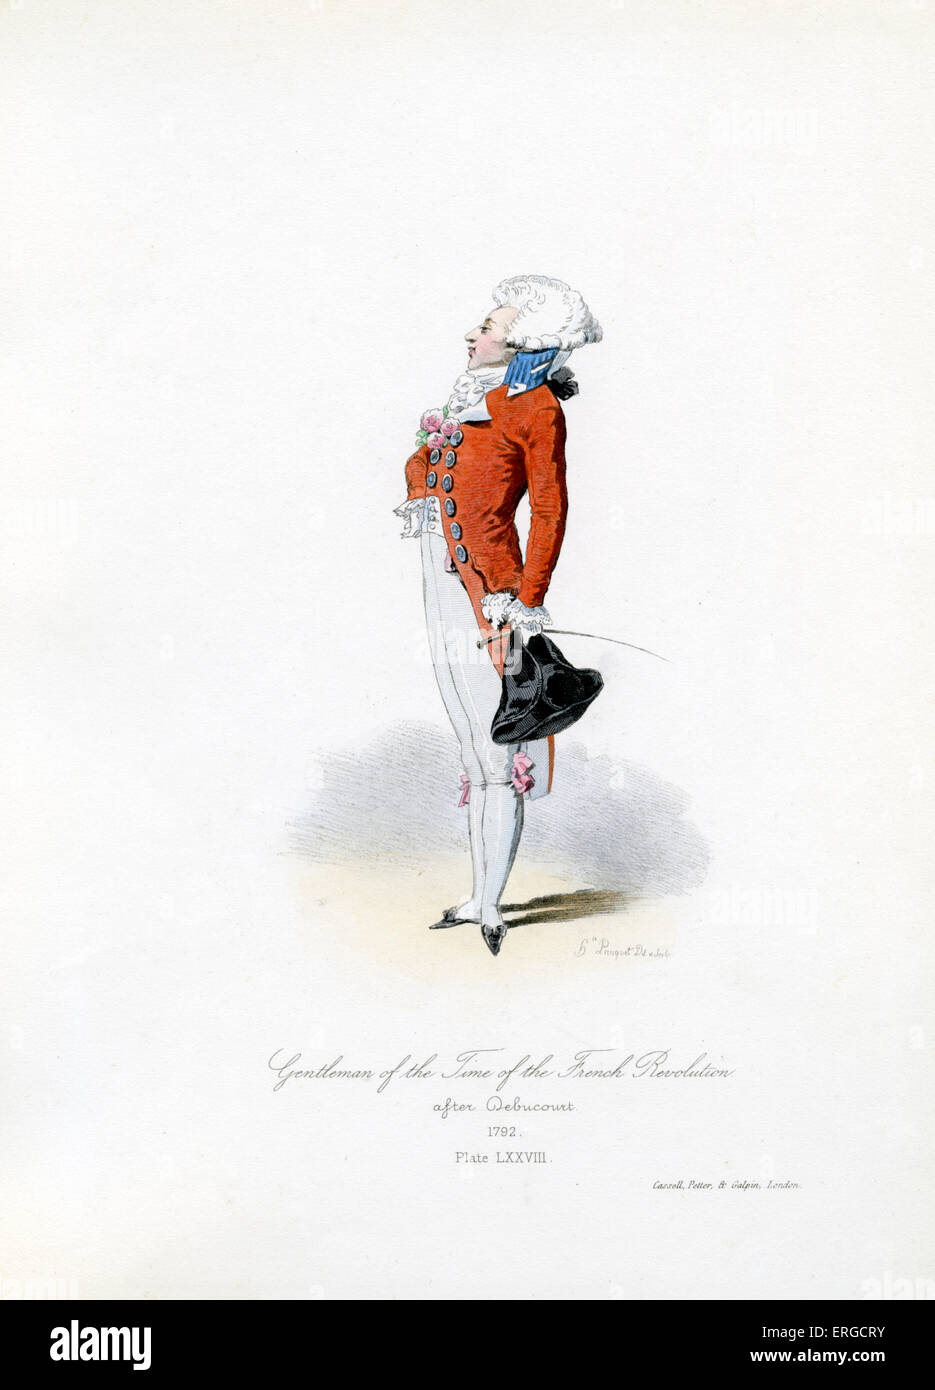 Gentleman aus der Zeit der französischen Revolution 1792 - vom Kupferstich von Hippolyte Pauquet nach Debucourt. Französische Revolution: Stockfoto